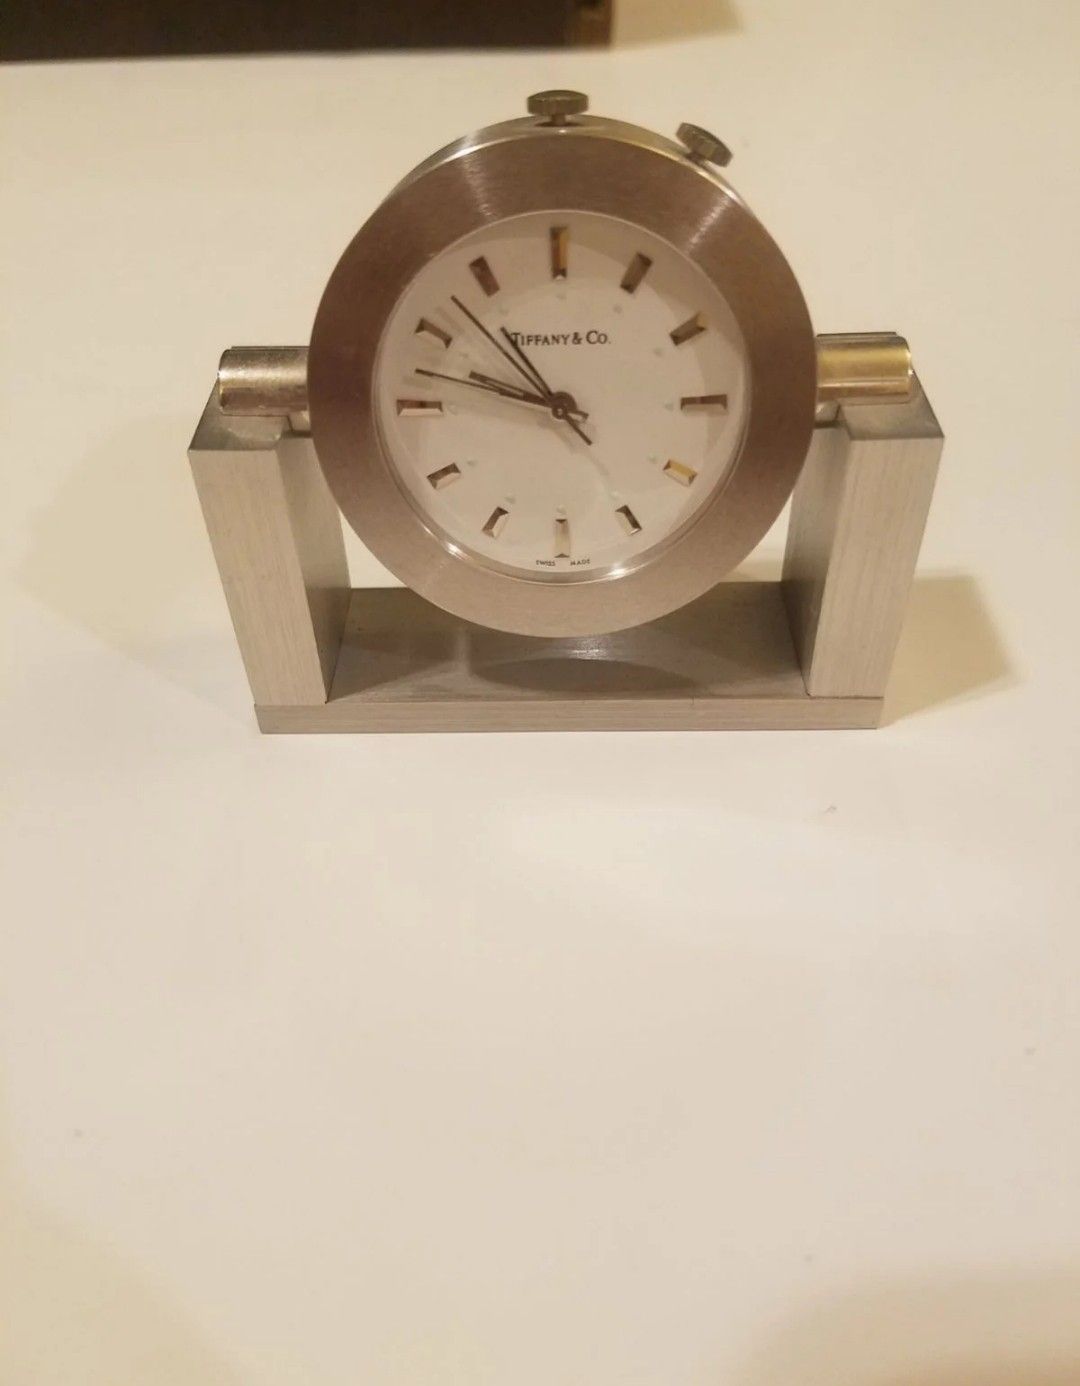 Tiffany & co small clock swiss made Heavy brass table clock